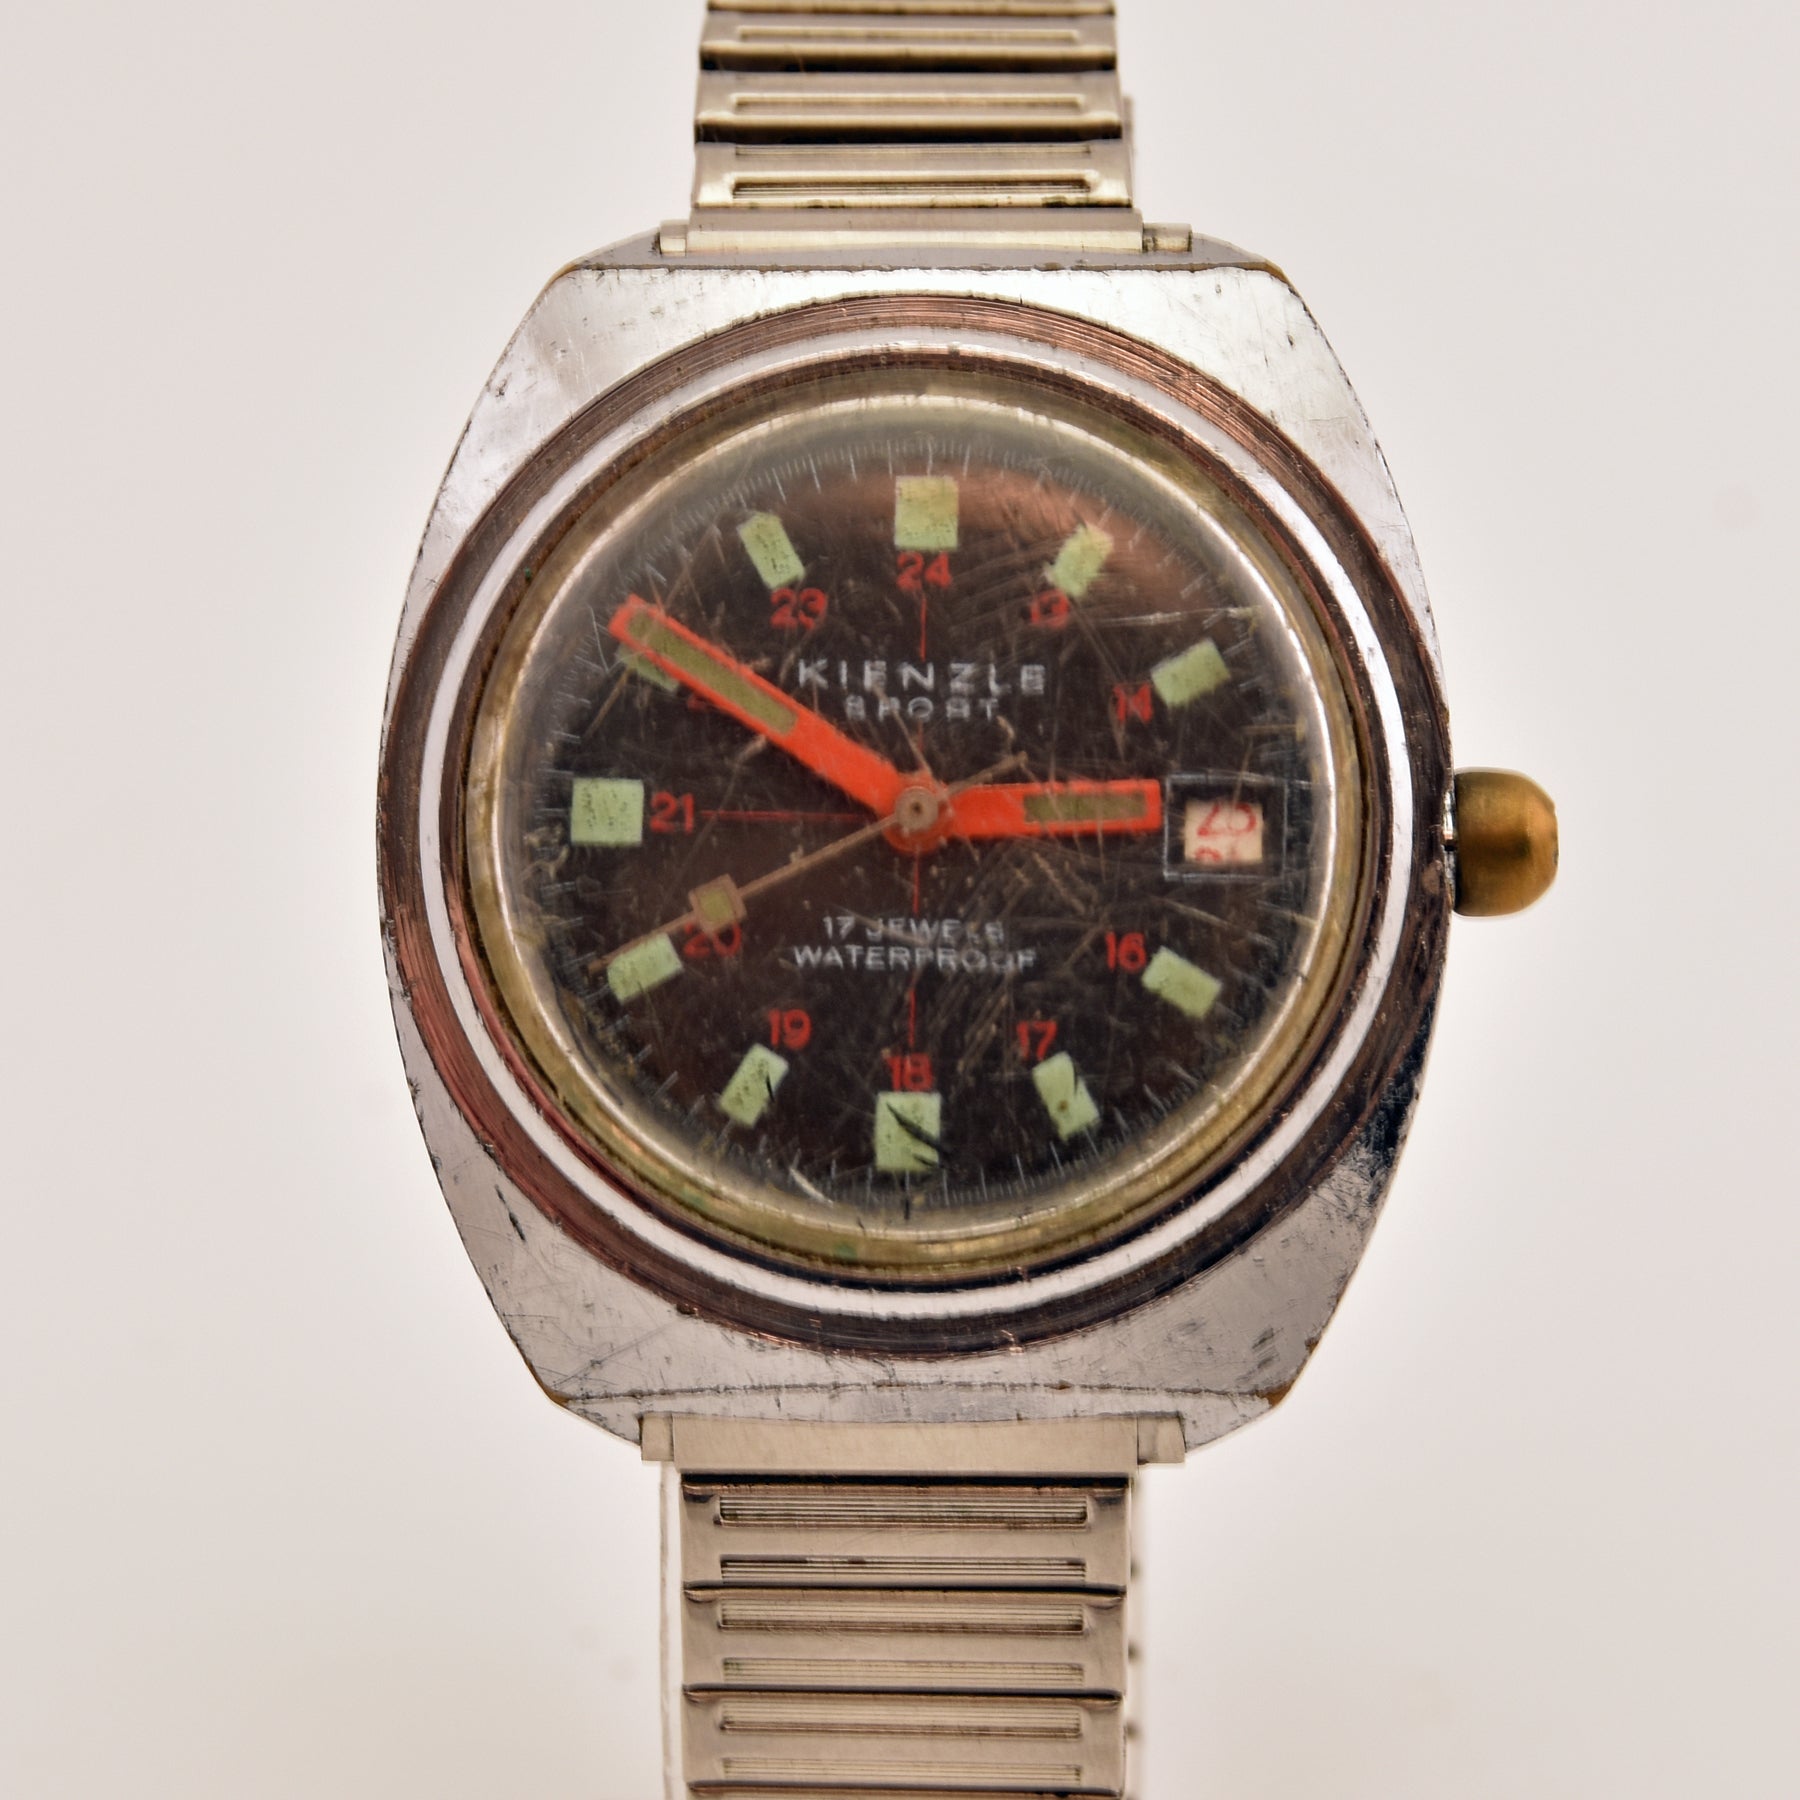 Wrist Watch German Kienzle Sports with date c1970s